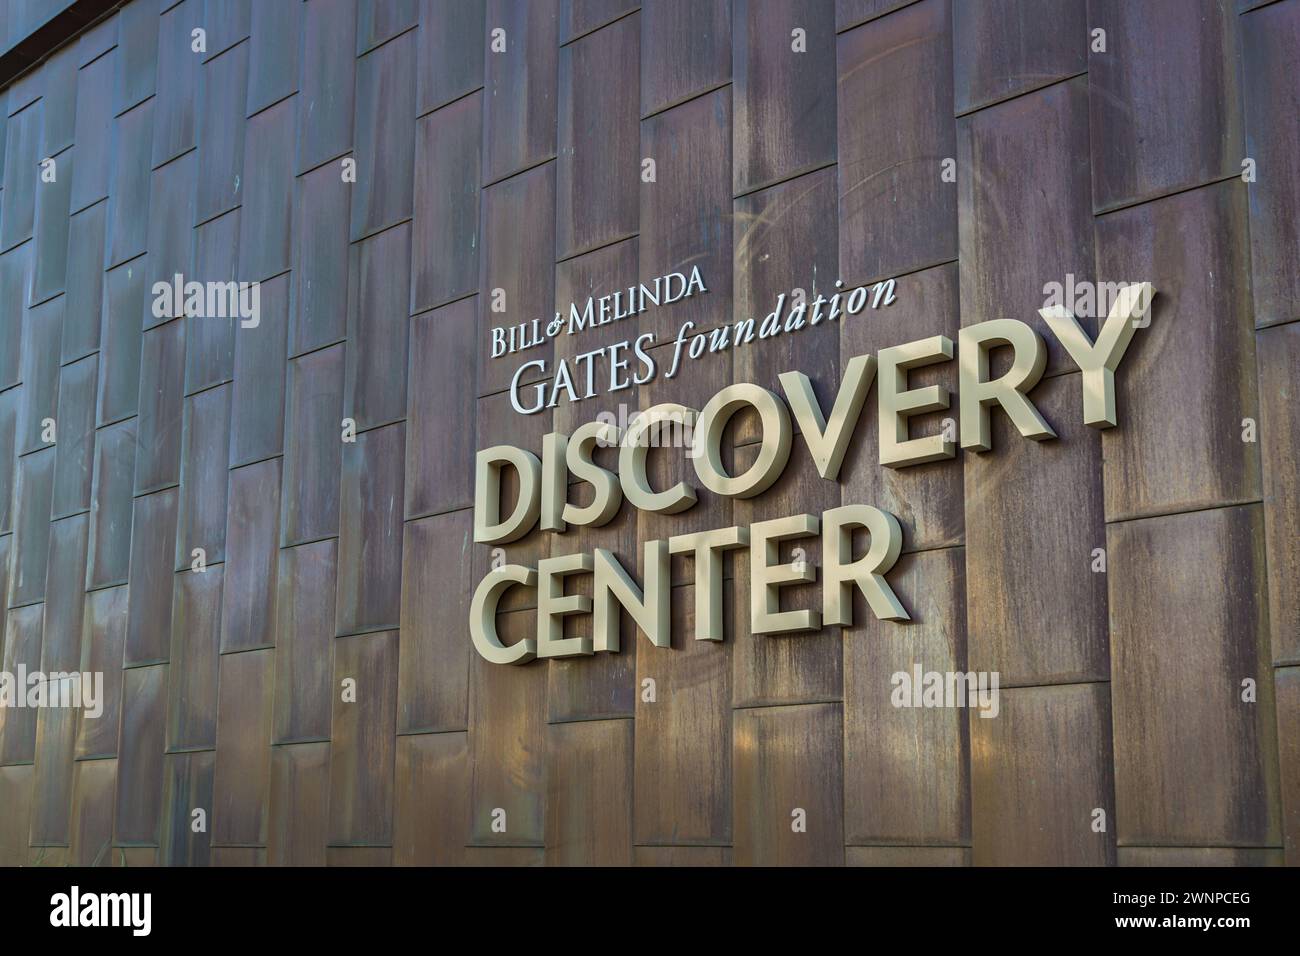 Discovery Center presso la Bill and Melinda Gates Foundation nel centro di Seattle, Washington Foto Stock